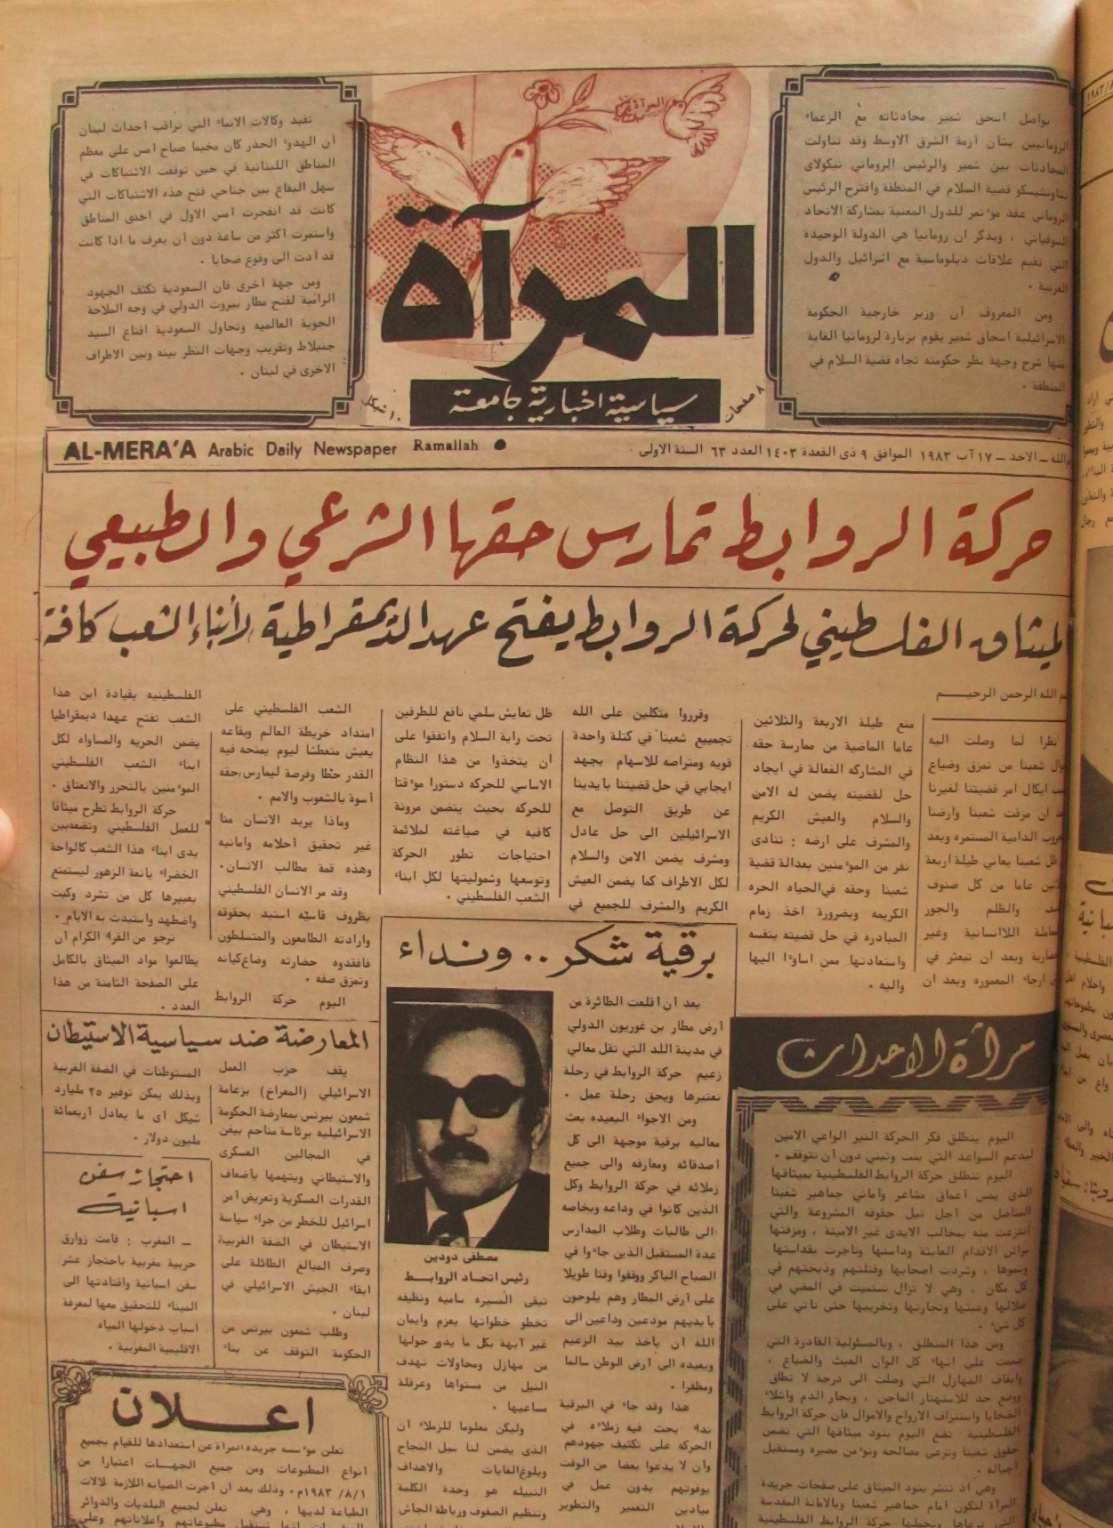 (صحيفة المرآة، (الميثاق الفلسطيني للسلام)، العدد 63 ، صدرت بتاريخ 17 /آب/ 1983. عمر صالح بشير)